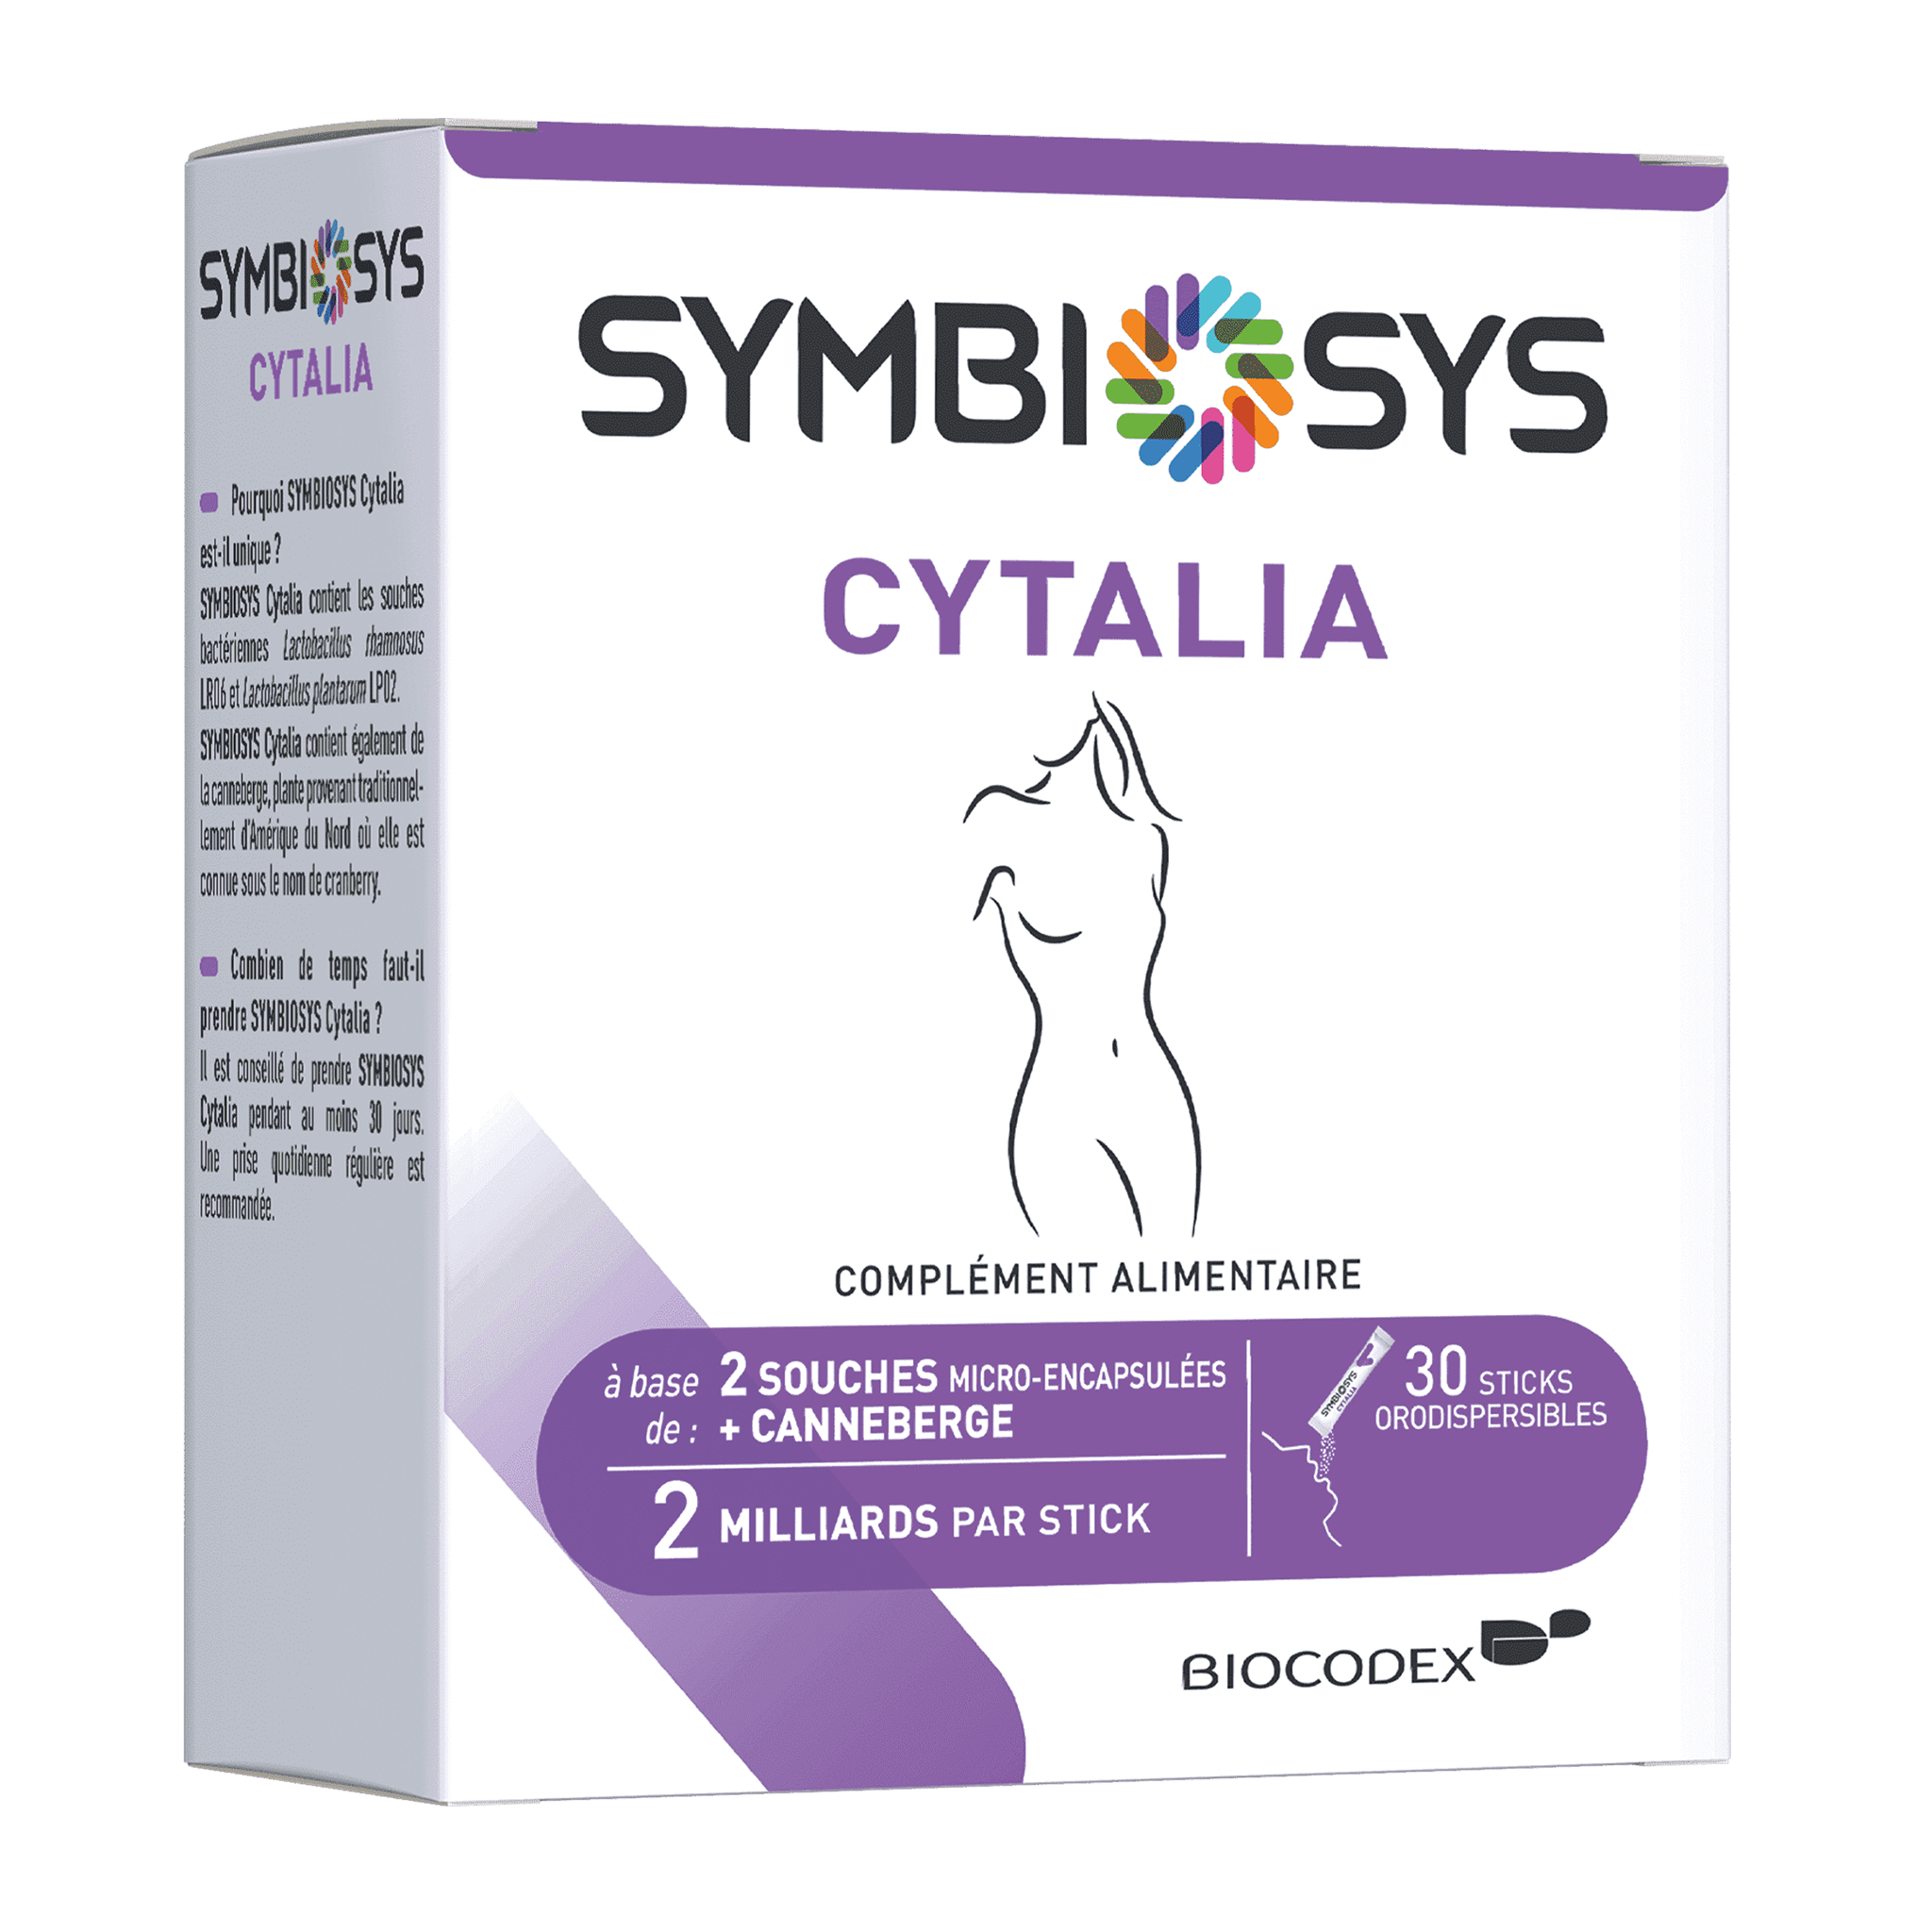 SYMBIOSYS Cytalia